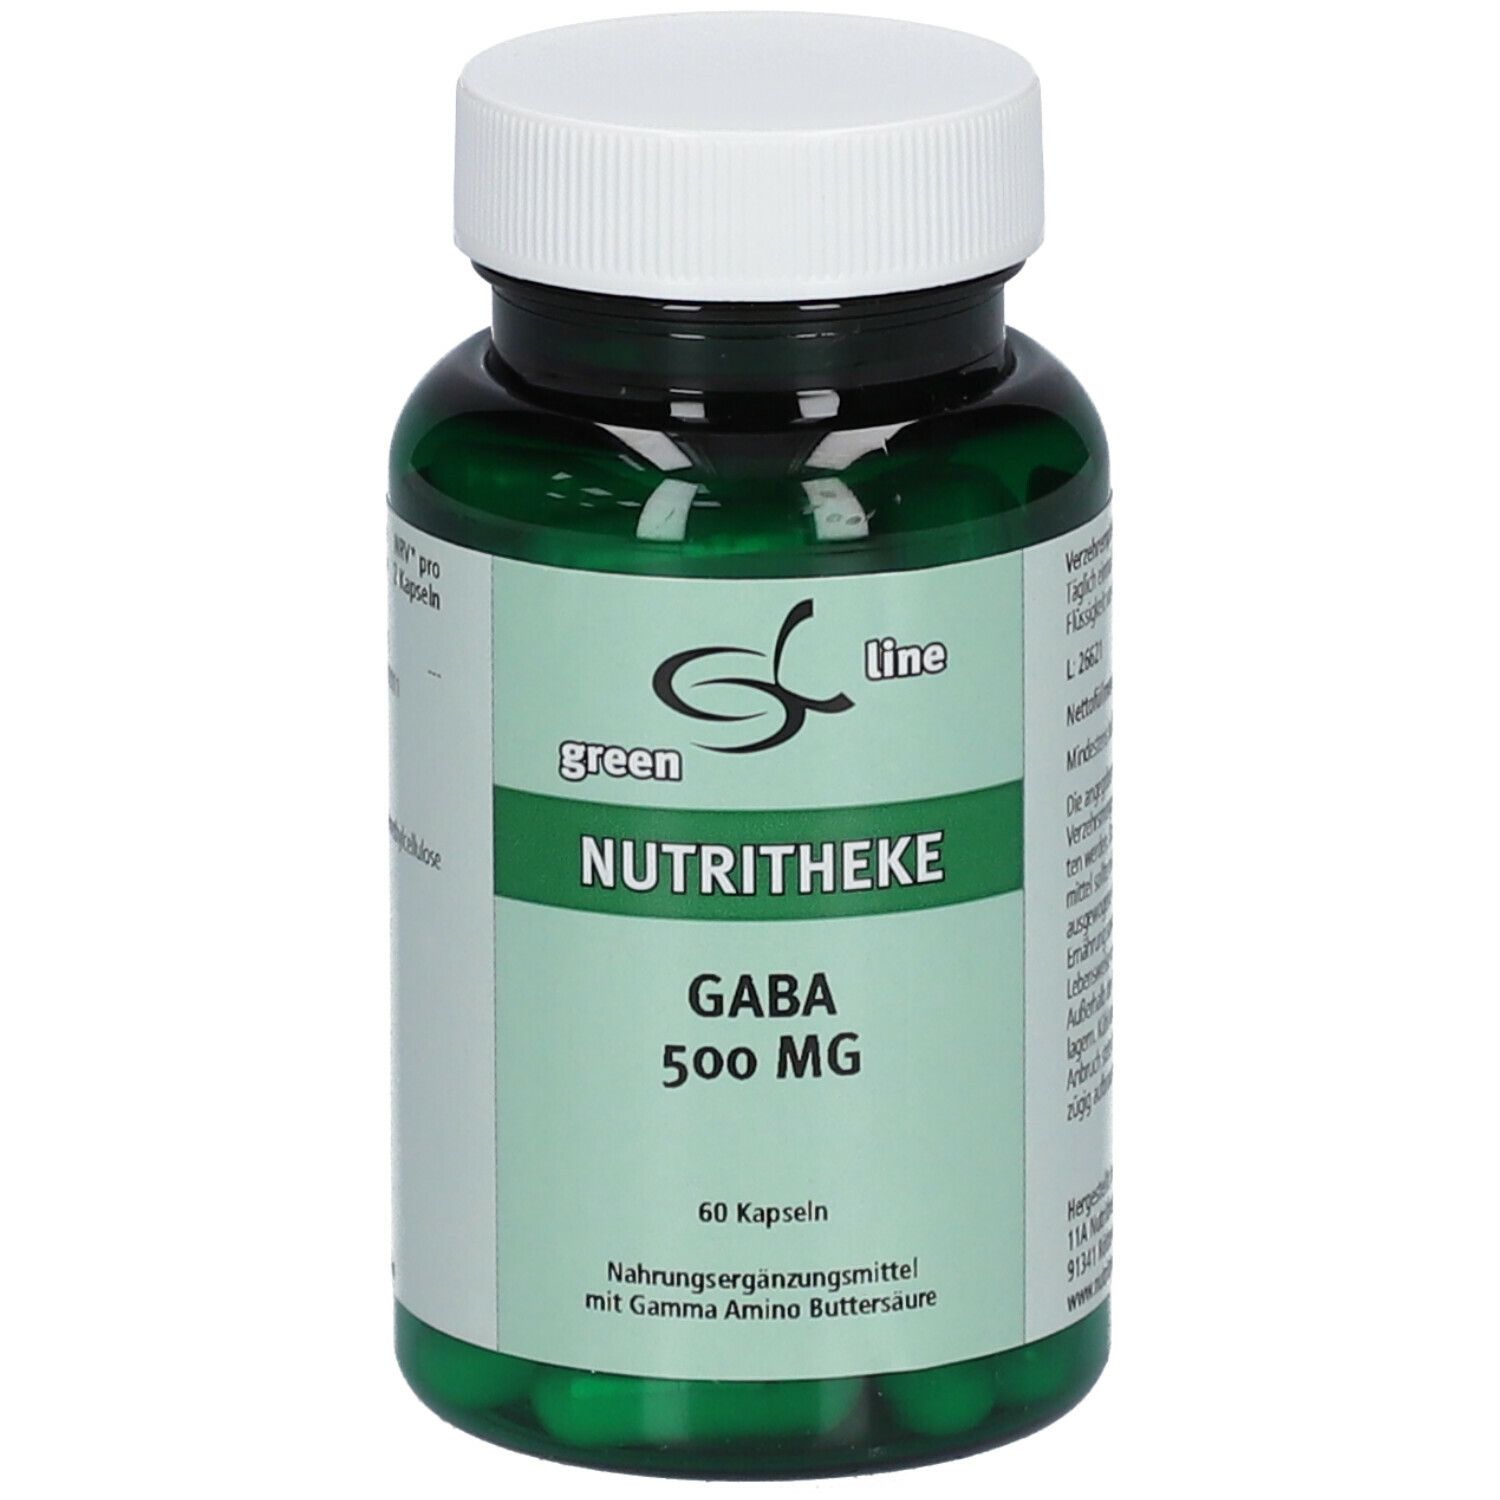 Image of green line GABA 500 mg